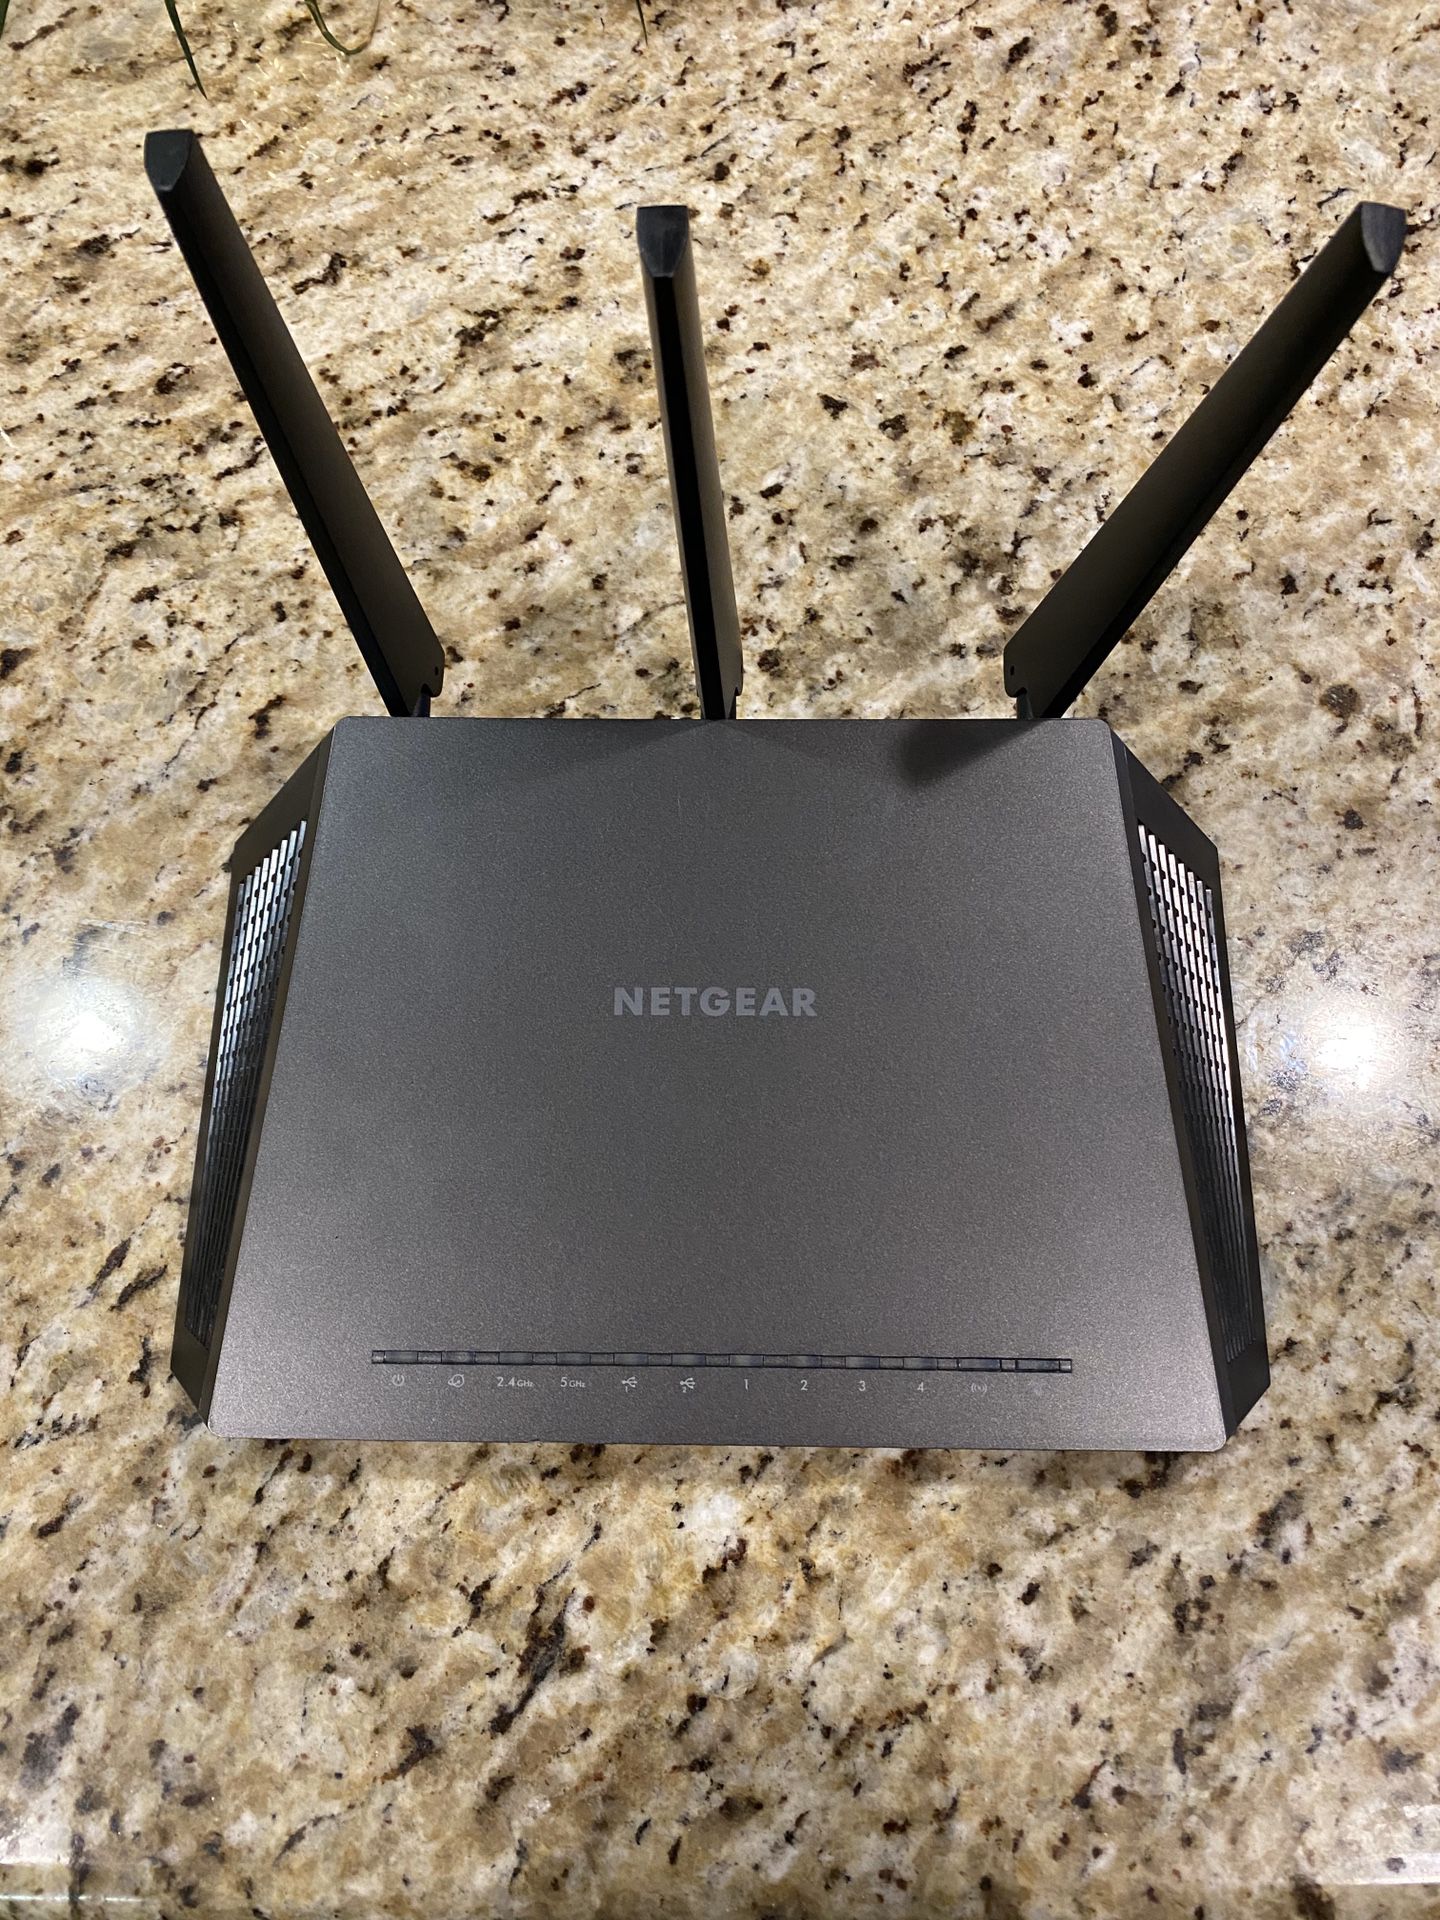 Netgear Nighthawk AC1900 Smart WiFi router